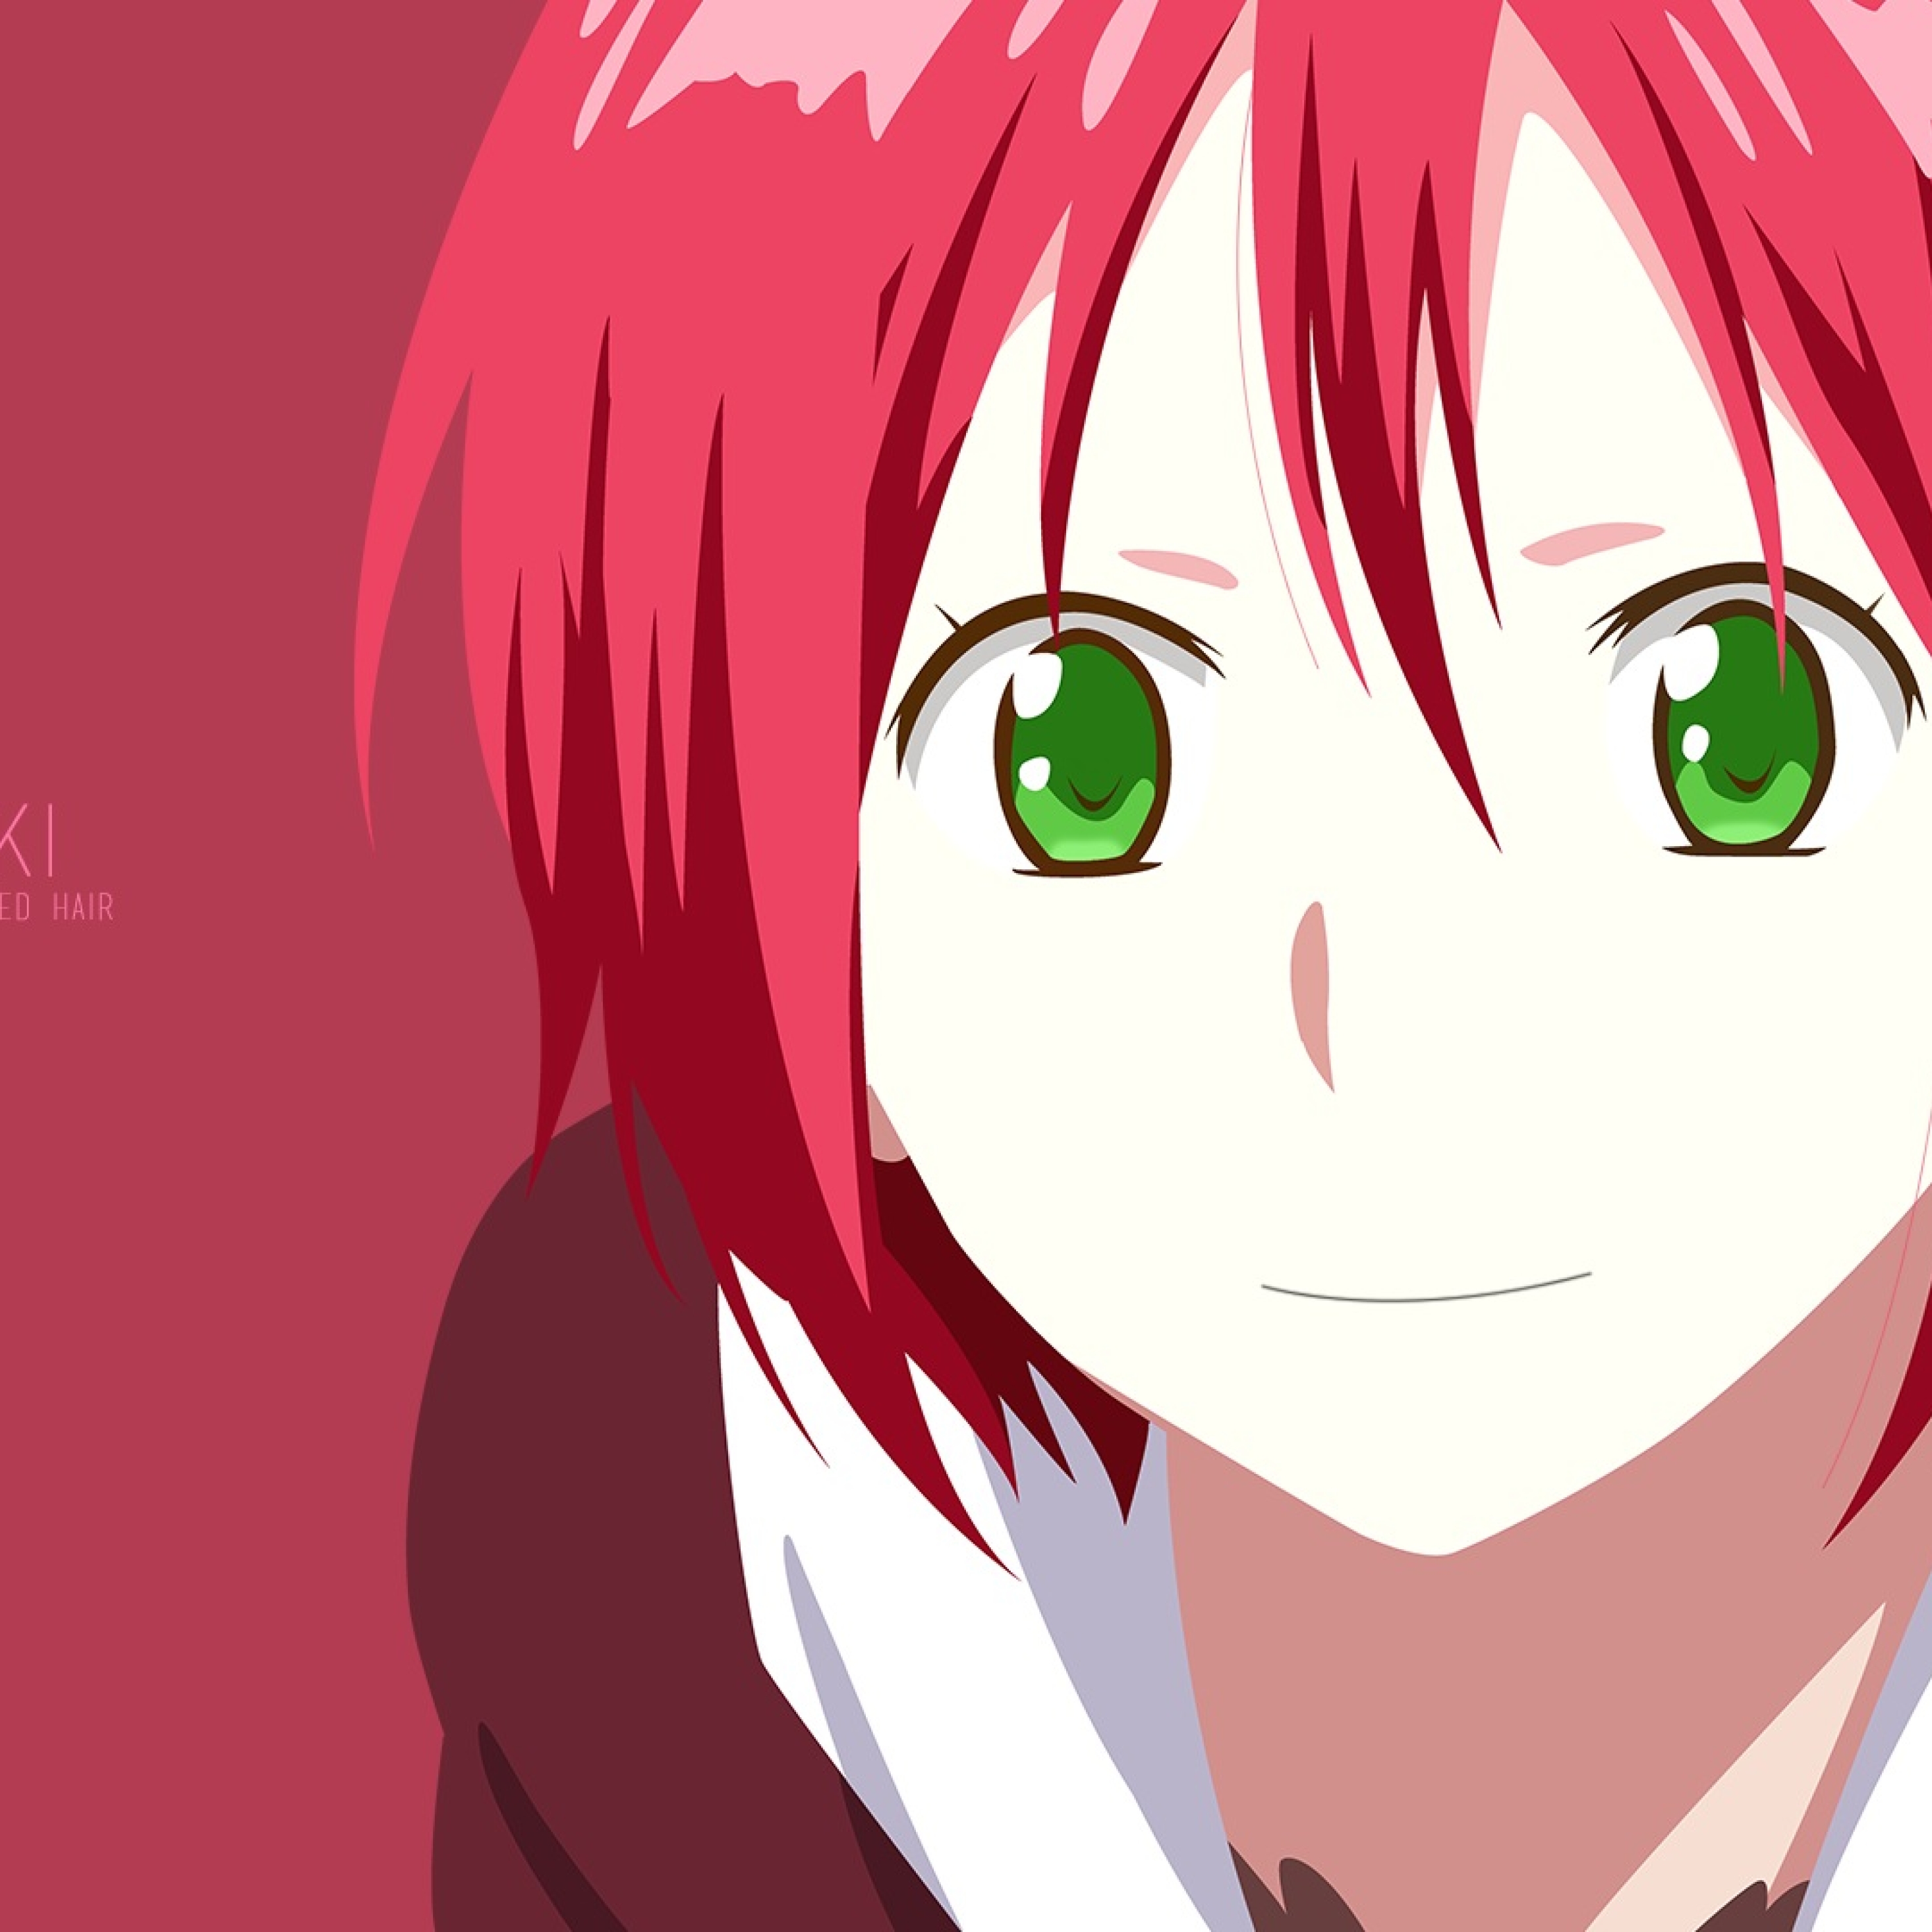 Anime Girl Red Hair Green Eyes - 2932x2932 Wallpaper 